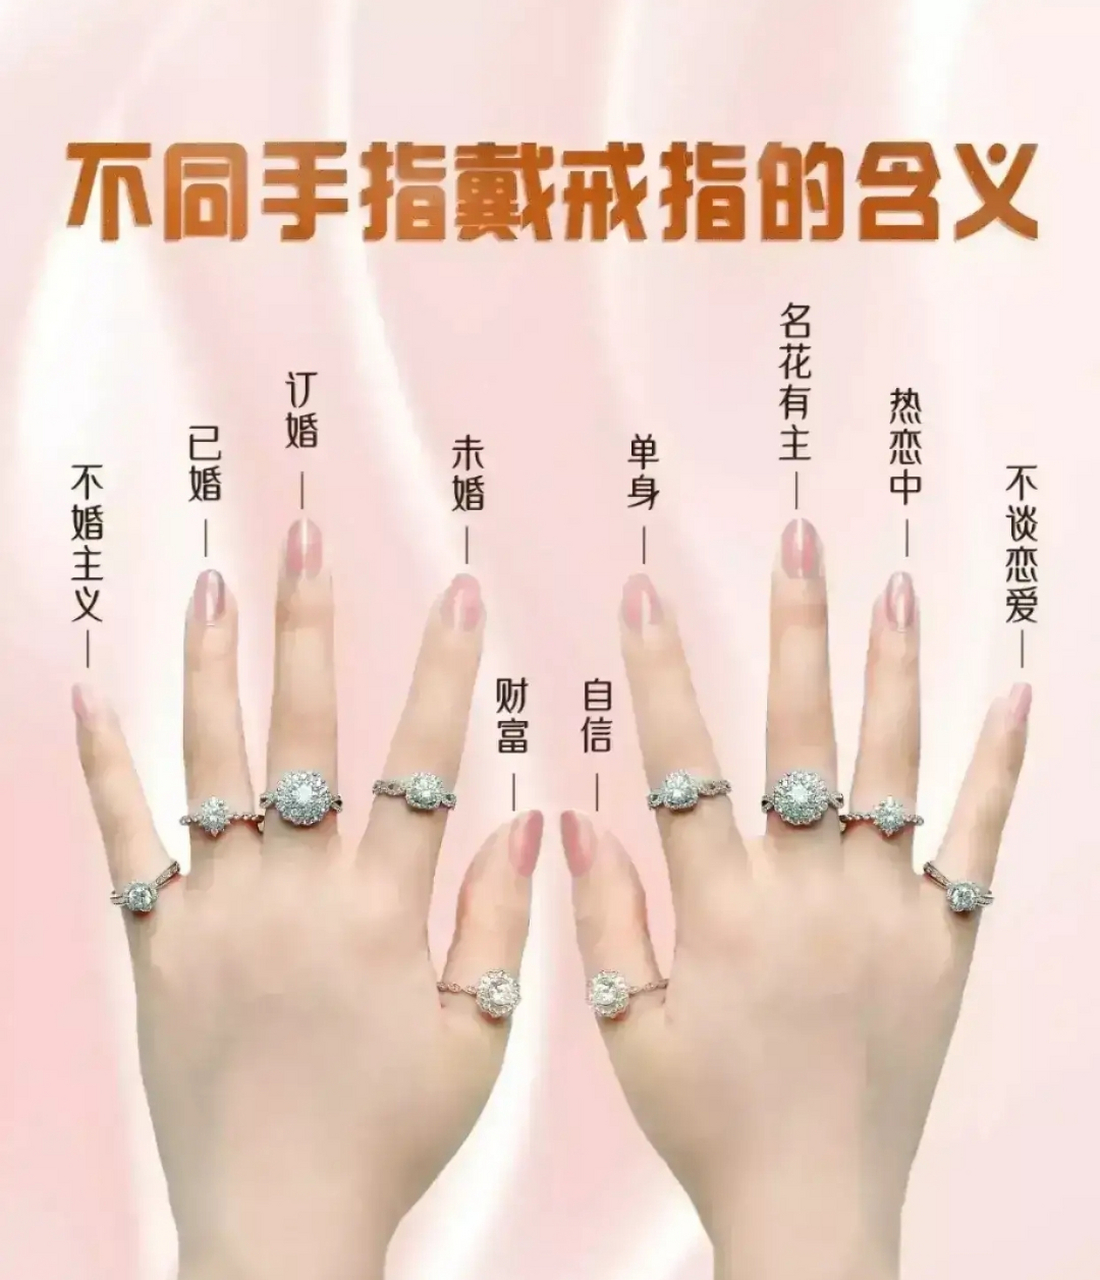 十指带戒指代表的不同含义 1,左手无名指:已婚 2,左手中指:订婚 3